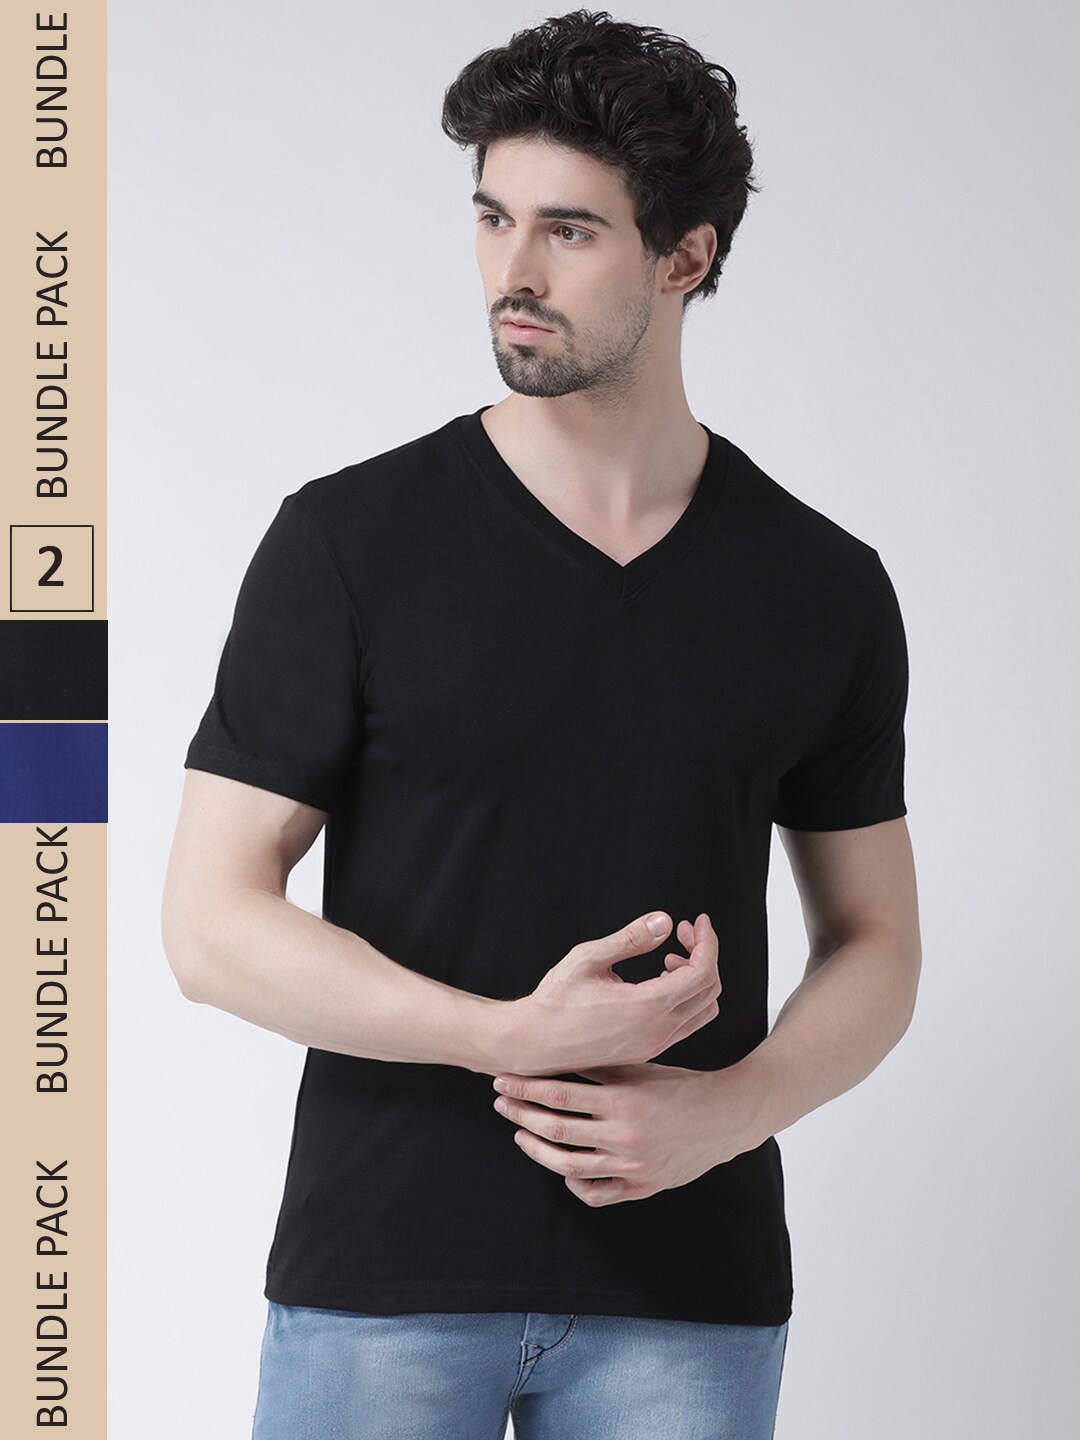 

Friskers Pack Of 2 V-Neck Slim Fit Cotton T-shirt, Black